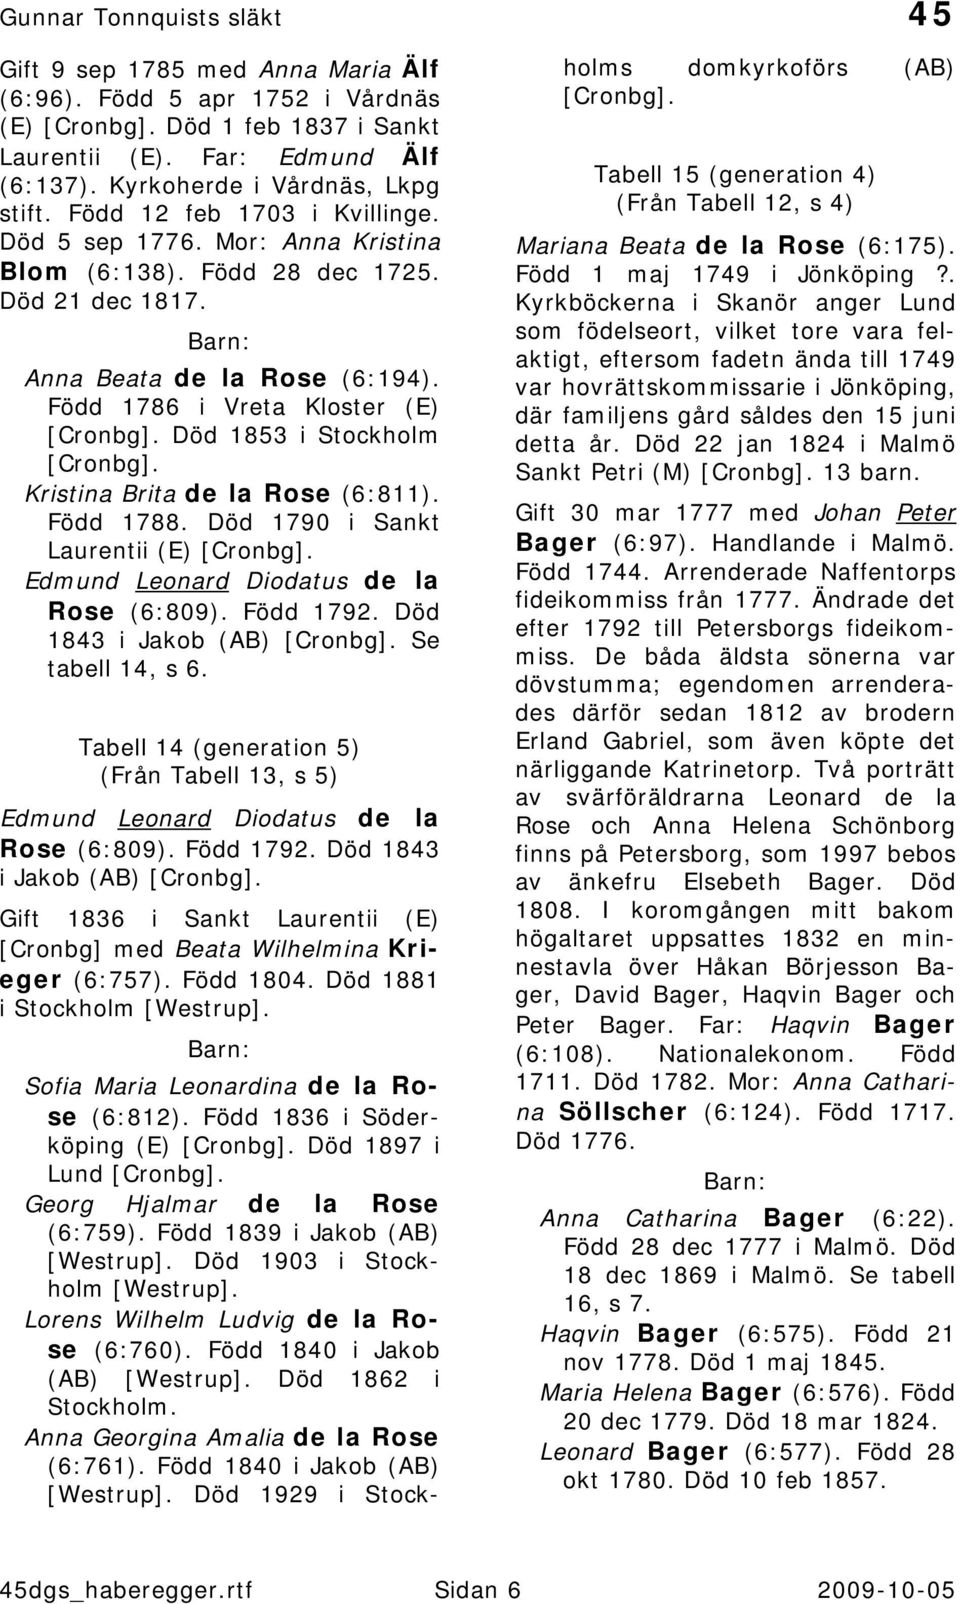 Född 1788. Död 1790 i Sankt Laurentii (E) Edmund Leonard Diodatus de la Rose (6:809). Född 1792. Död 1843 i Jakob (AB) Se tabell 14, s 6.